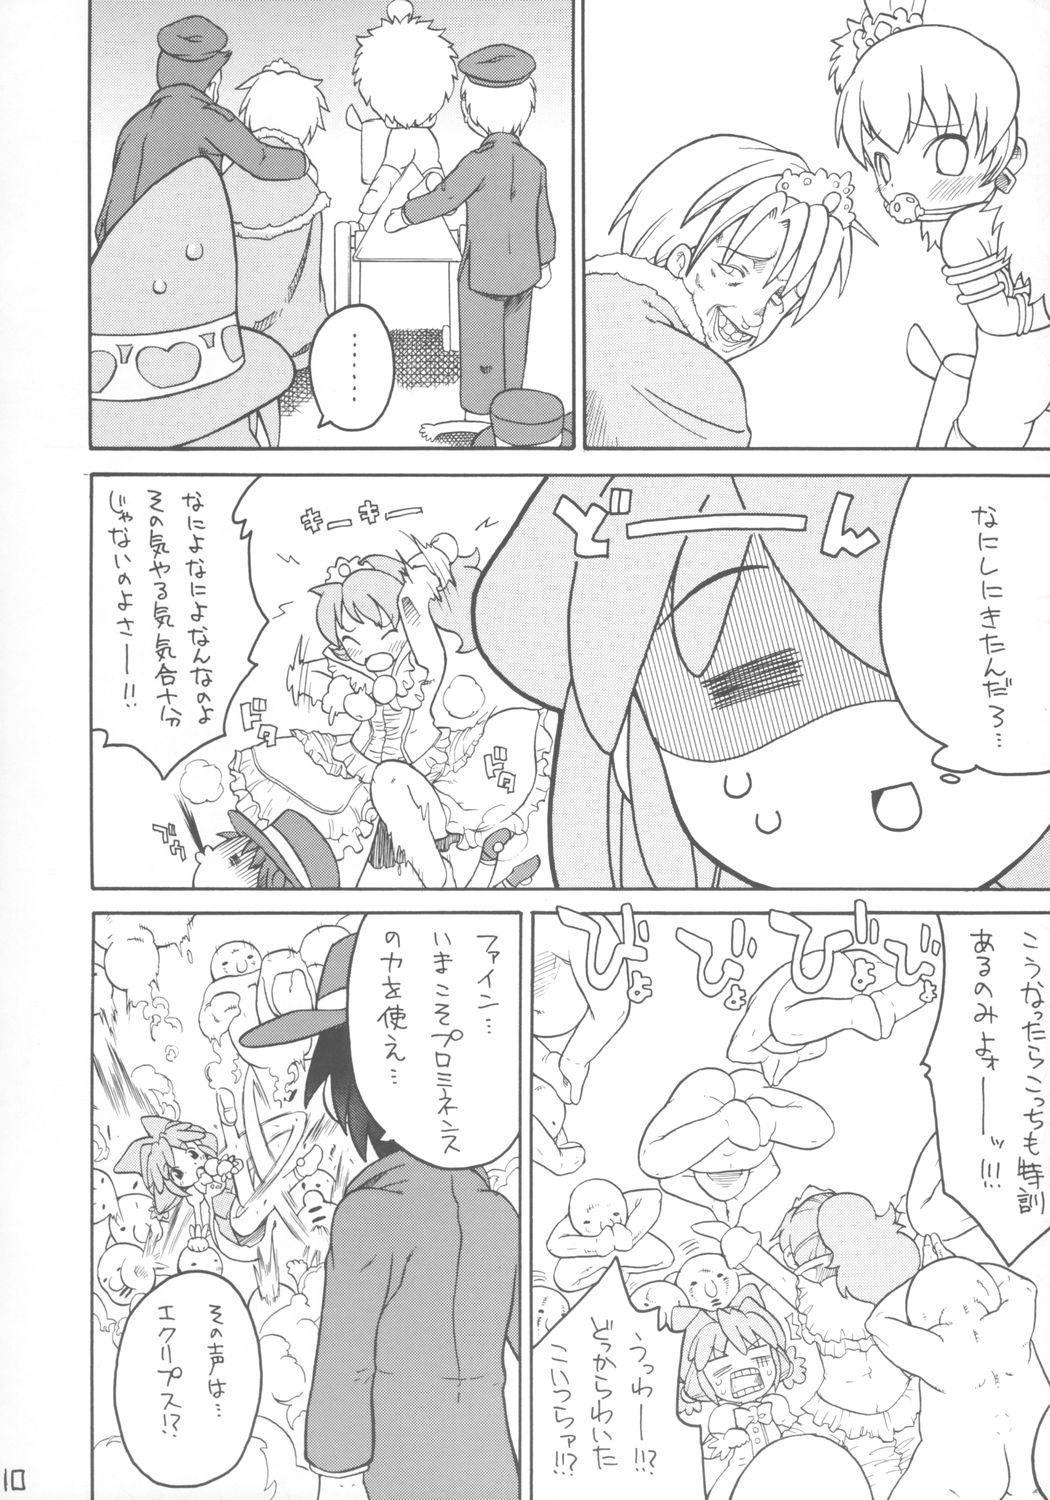 Gordibuena Kodomo ja Neenda Princess nanda! - Fushigiboshi no futagohime Hardcoresex - Page 9